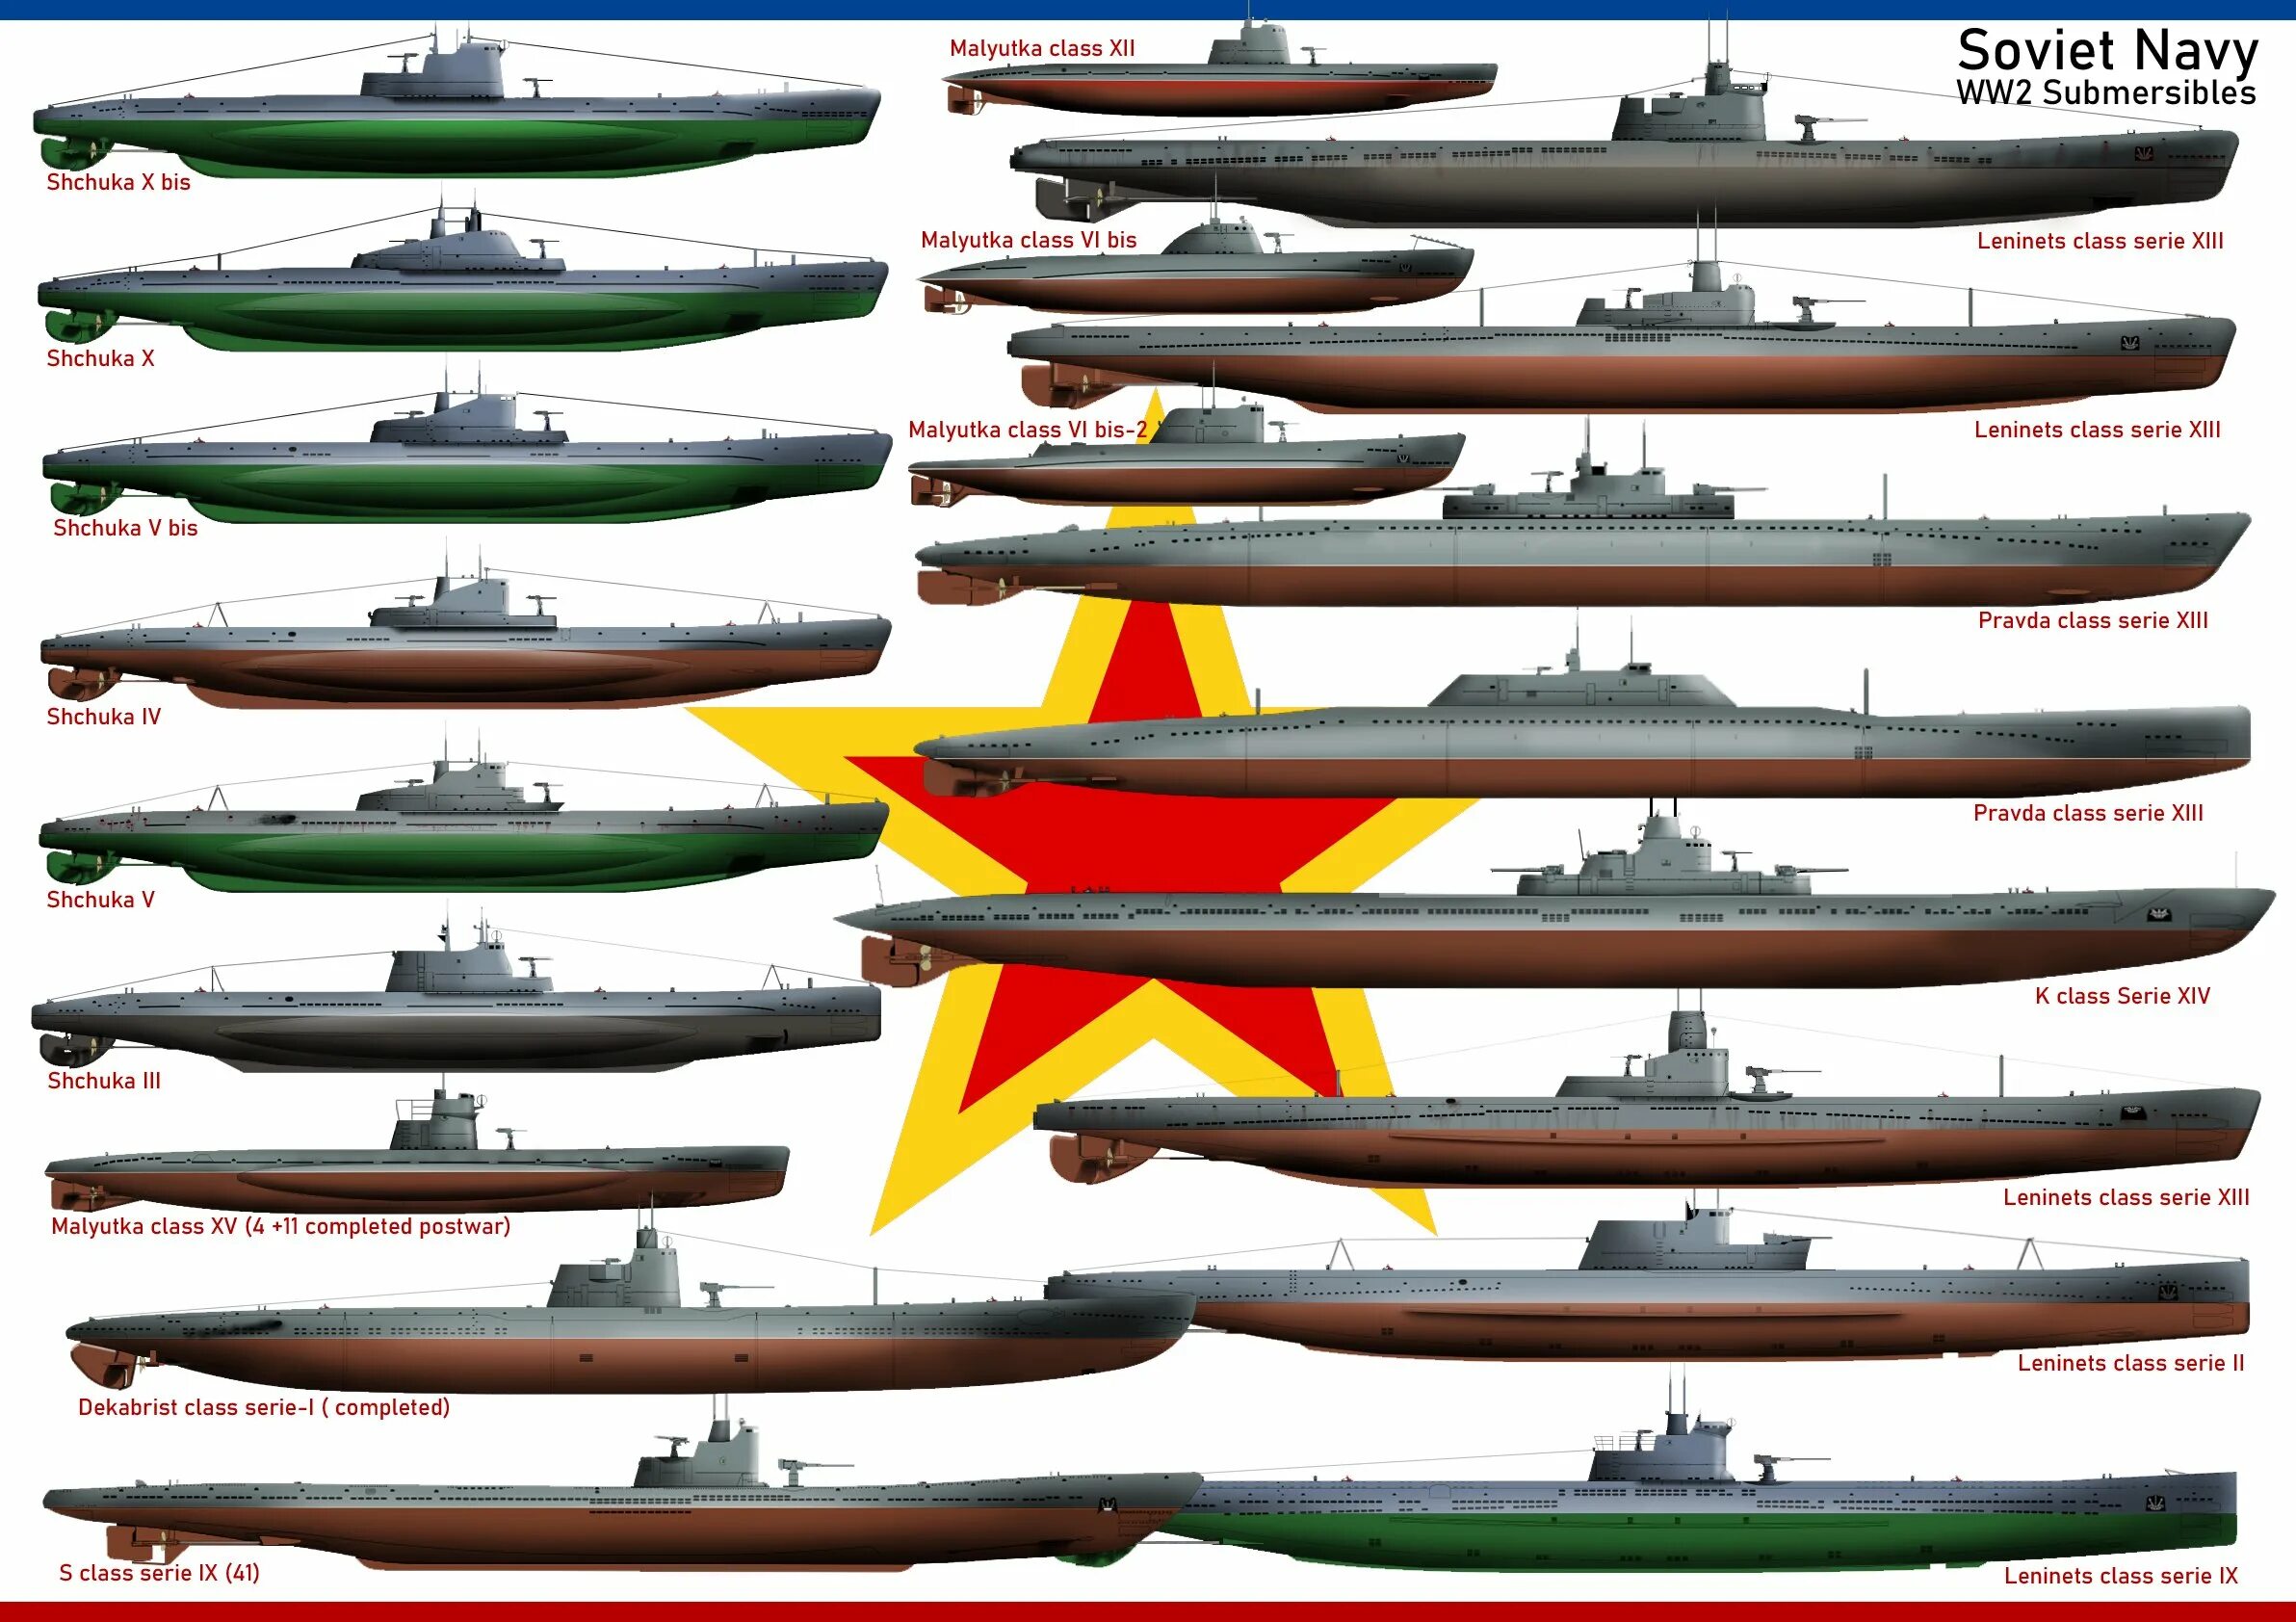 Малые пл. Подводные лодки 2 мировой войны СССР. Подводные лодки СССР 1939-1945. Подводная лодка второй мировой войны СССР. Подводная лодка СССР 2 мировой войны.